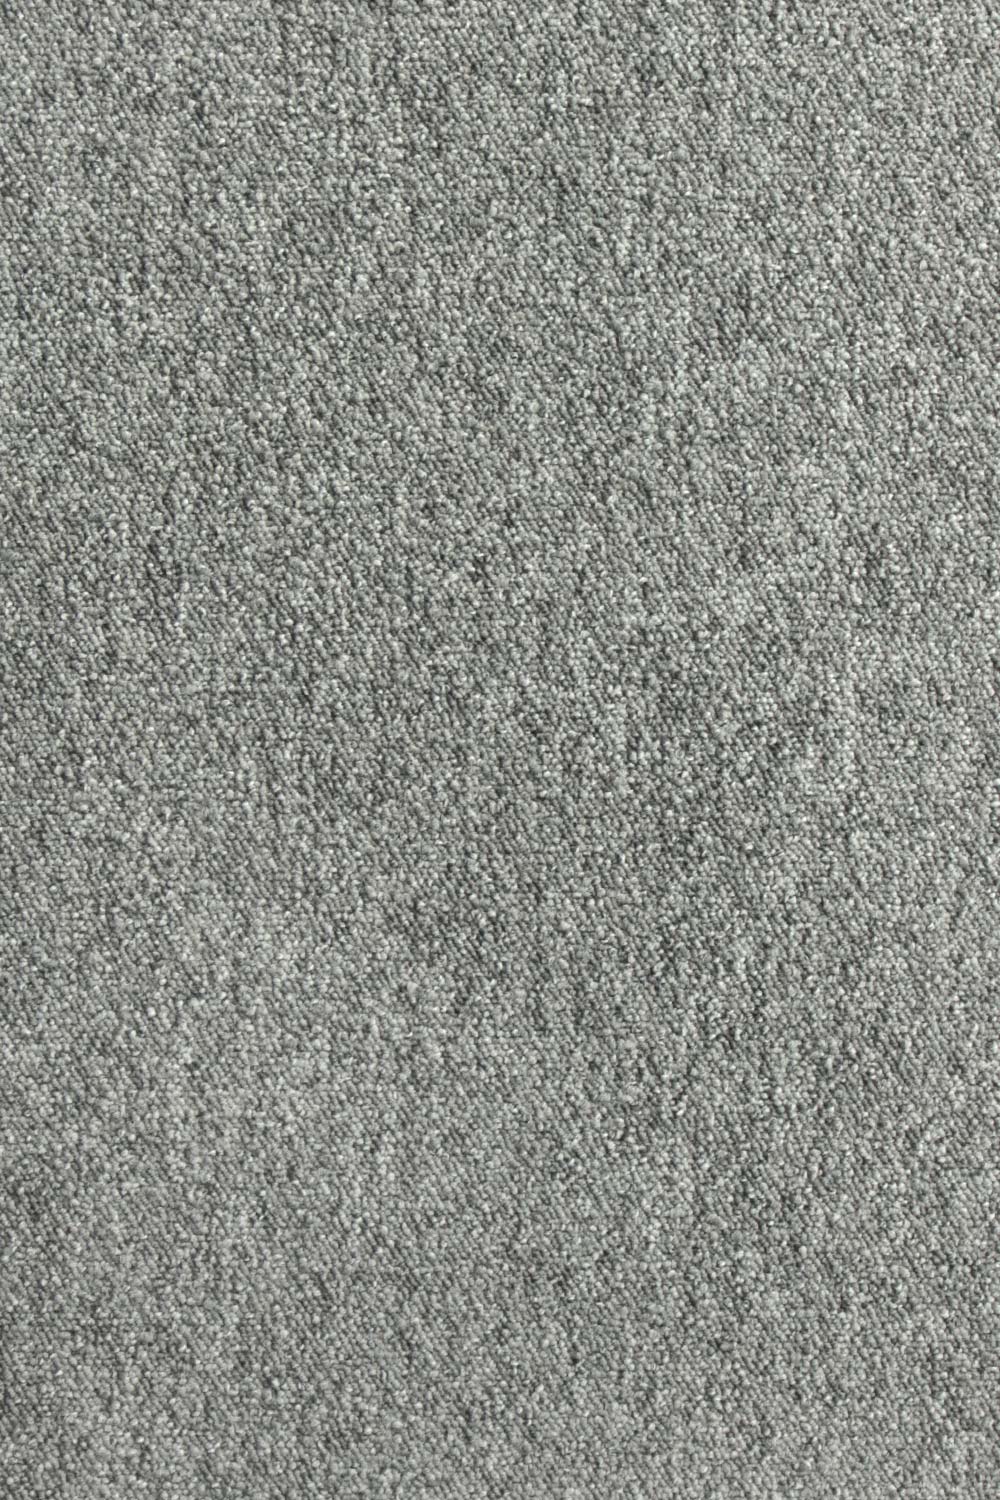 Metrážny koberec Lyon Solid 75 400 cm